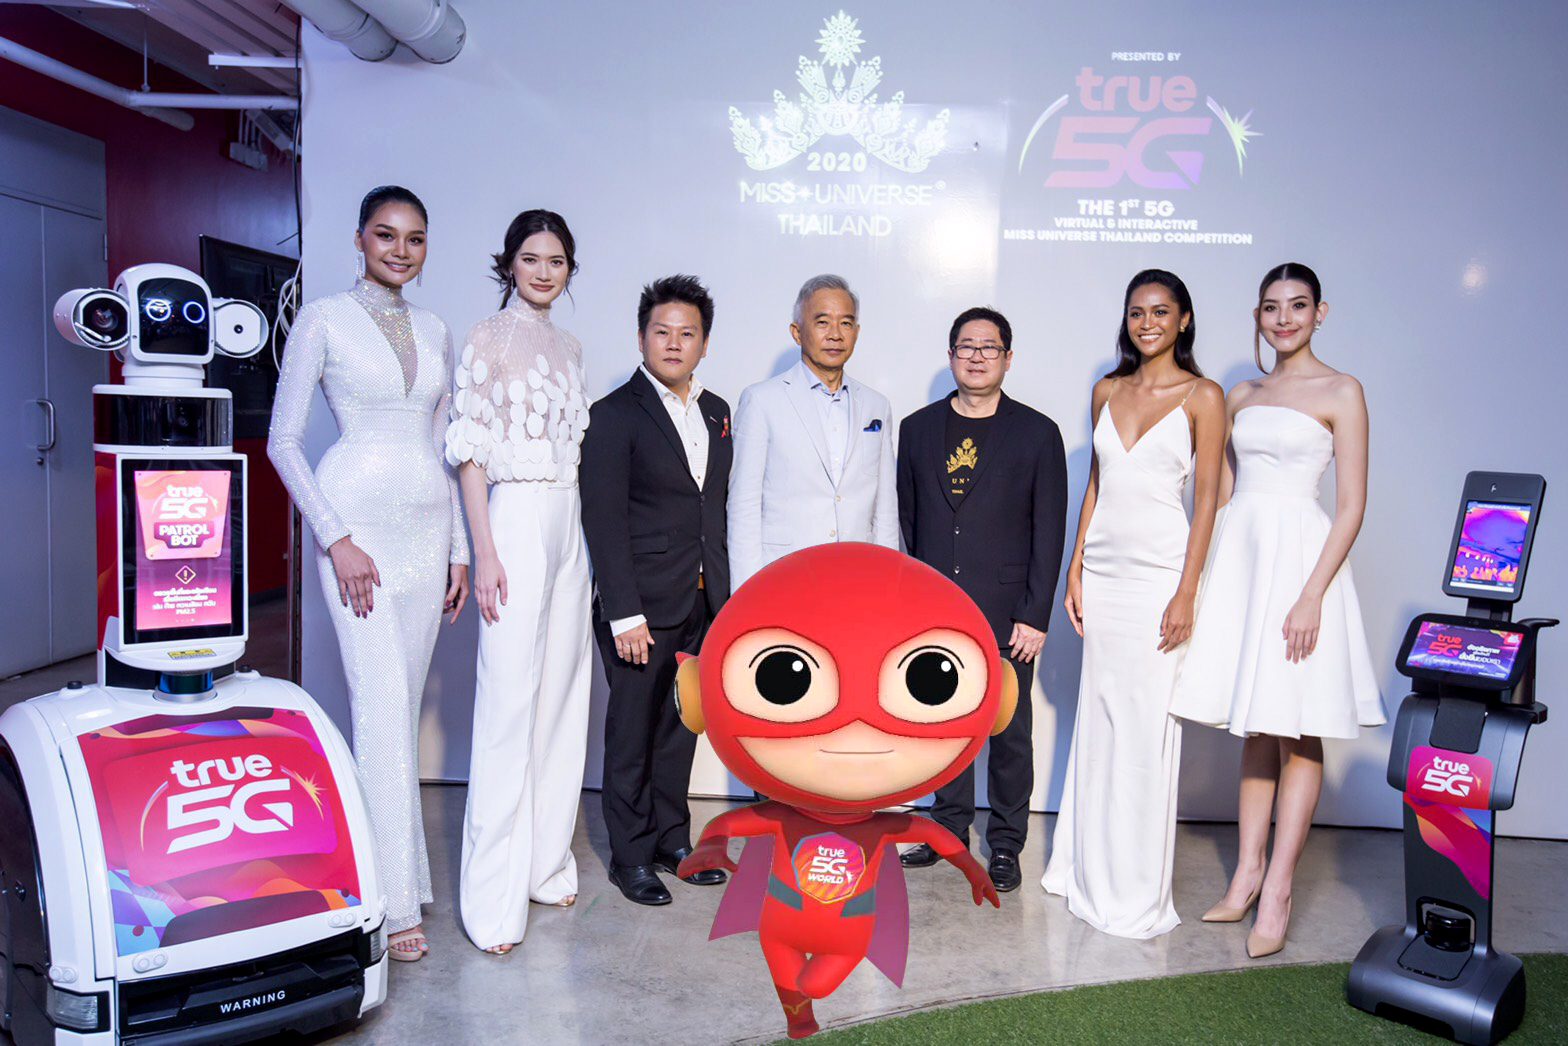 ทรู 5G จัดให้.ยิ่งใหญ่อลังการกับการประกวดรูปแบบใหม่ Miss Universe Thailand 2020 ครั้งแรกที่ชาวไทยจะได้ร่วมชมและเชียร์สาวงามแบบนิวนอร์มัล